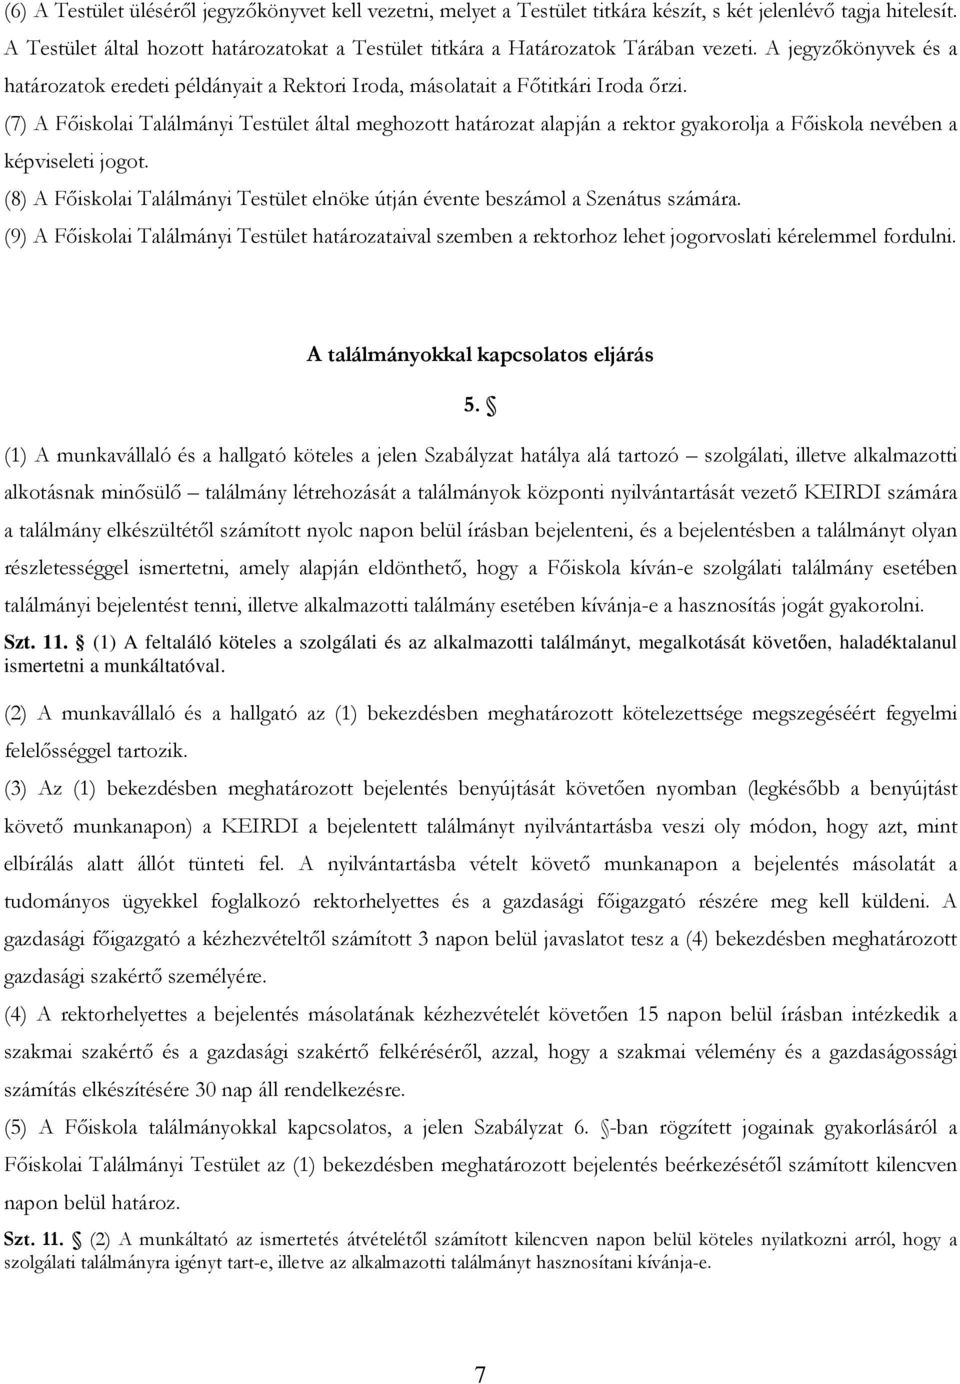 (7) A Fıiskolai Találmányi Testület által meghozott határozat alapján a rektor gyakorolja a Fıiskola nevében a képviseleti jogot.